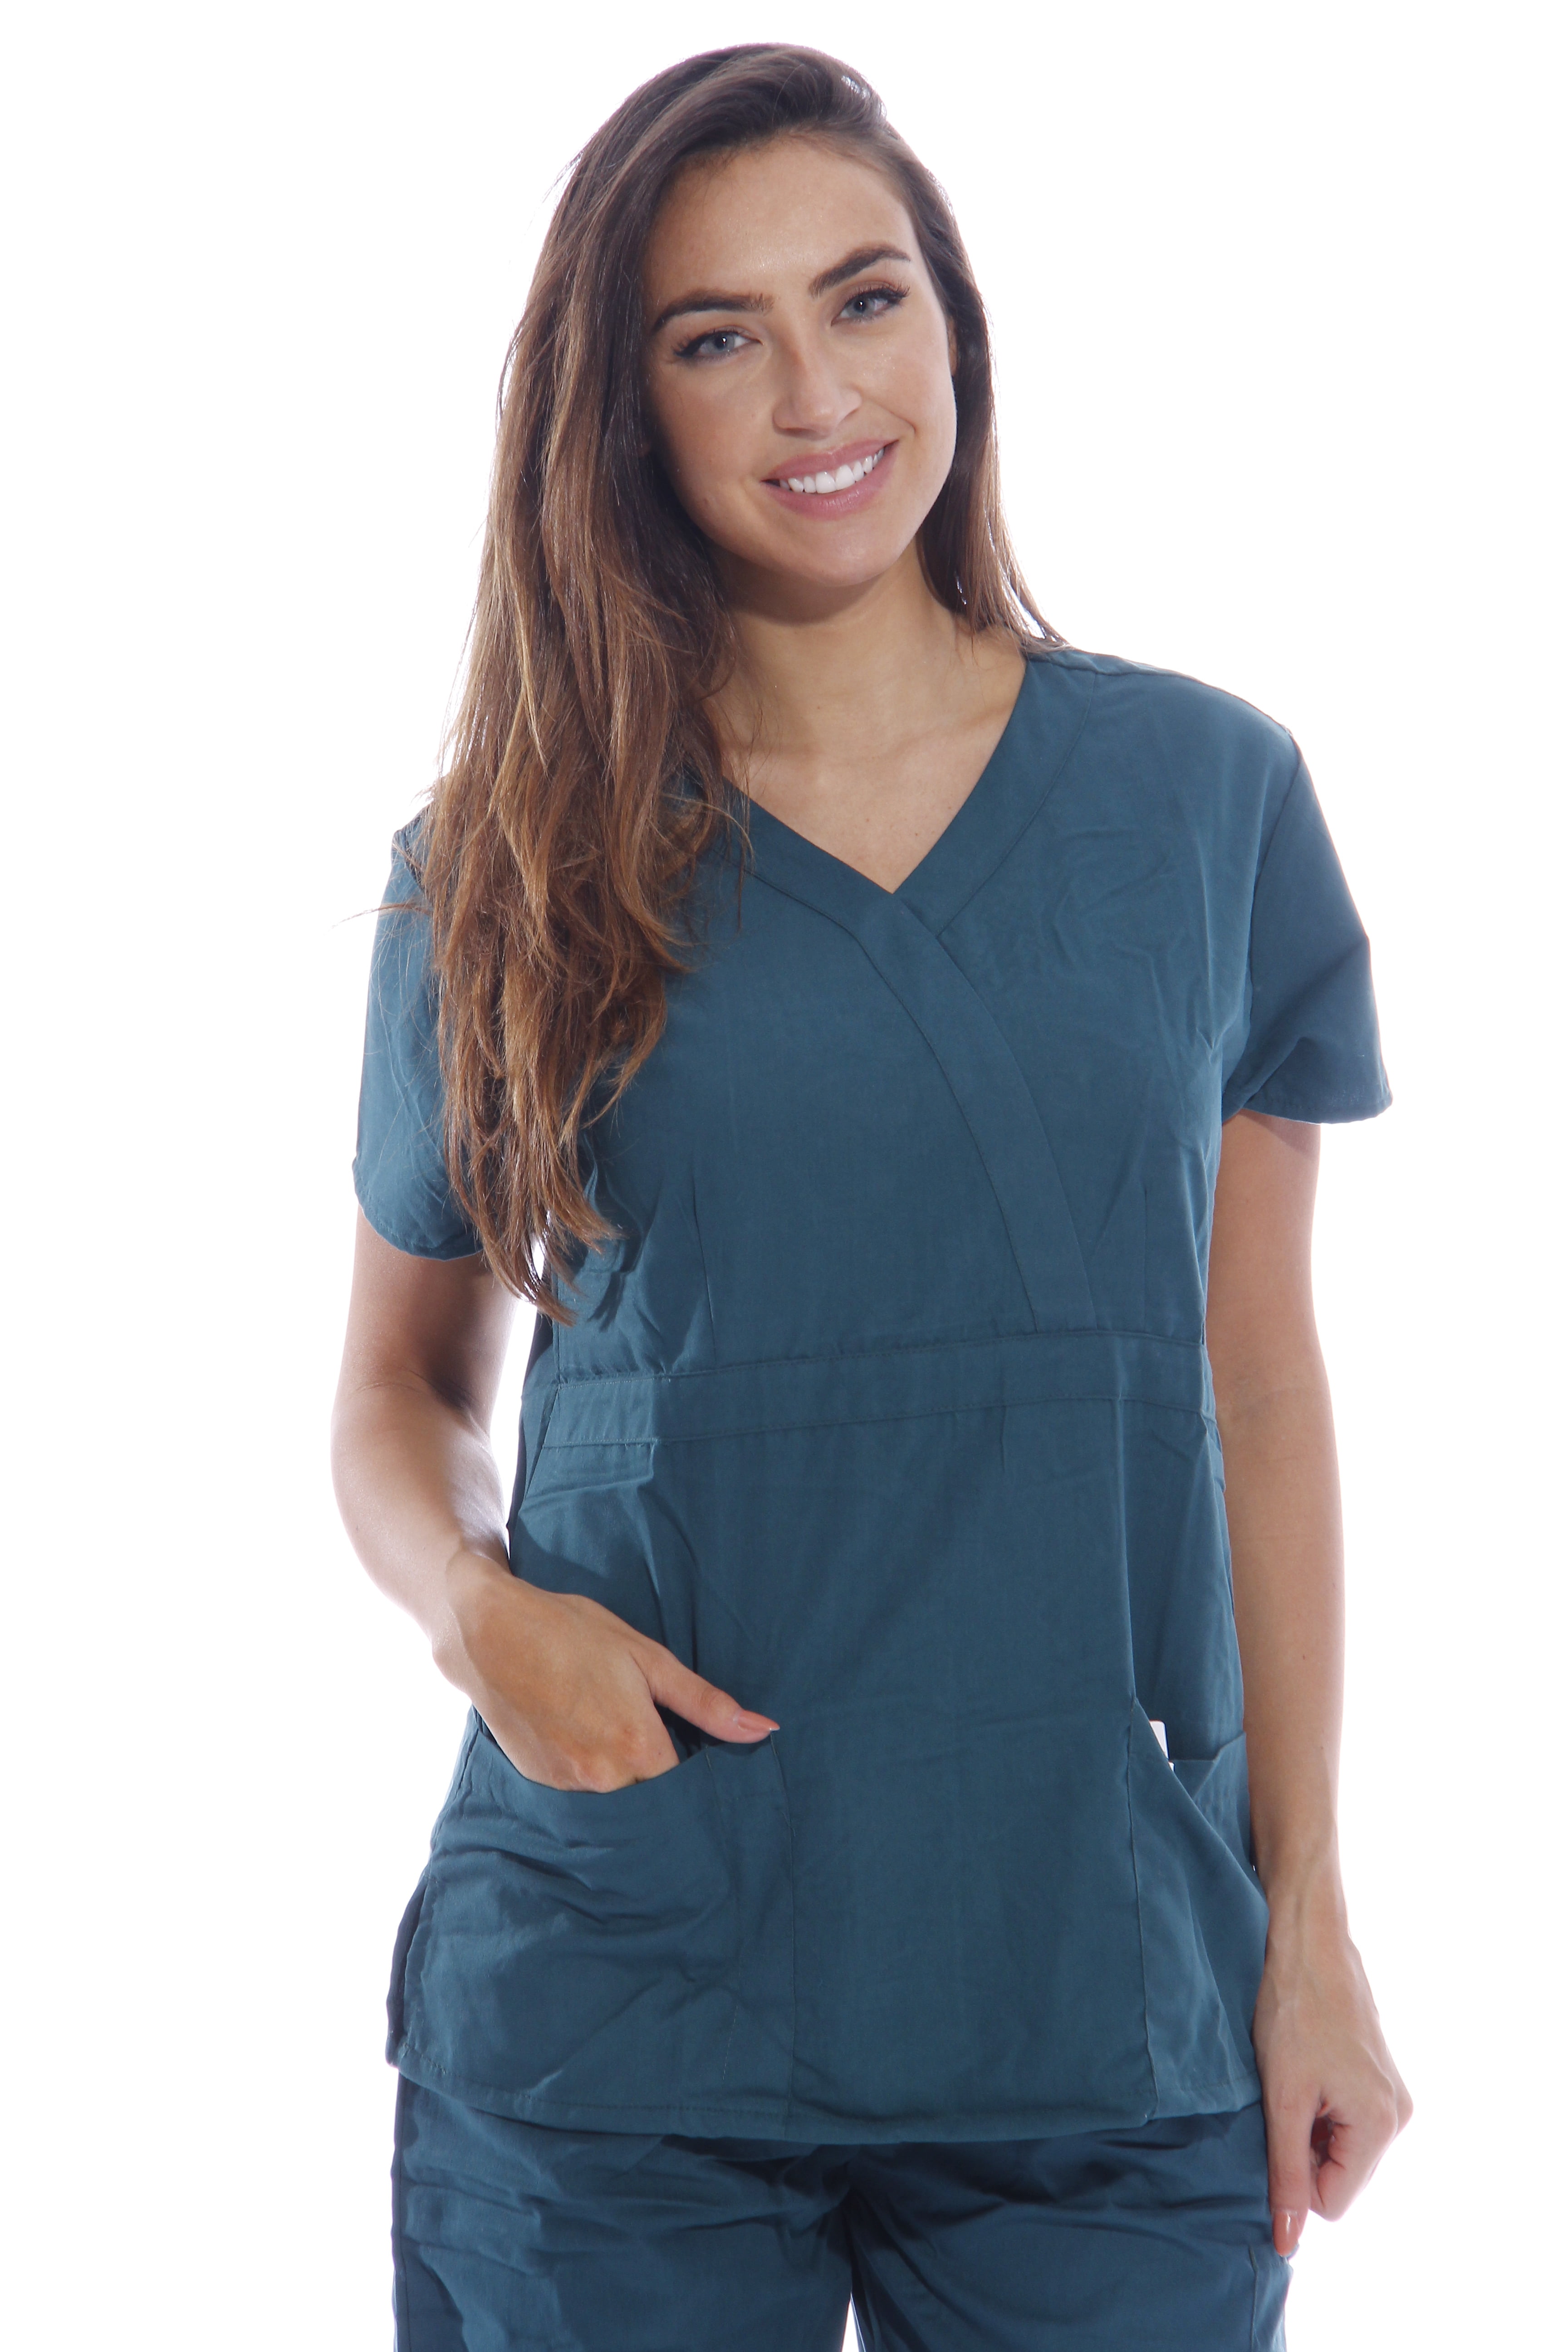 Women's Scrub/Nursing Uniforms/Medical Scrubs Top 